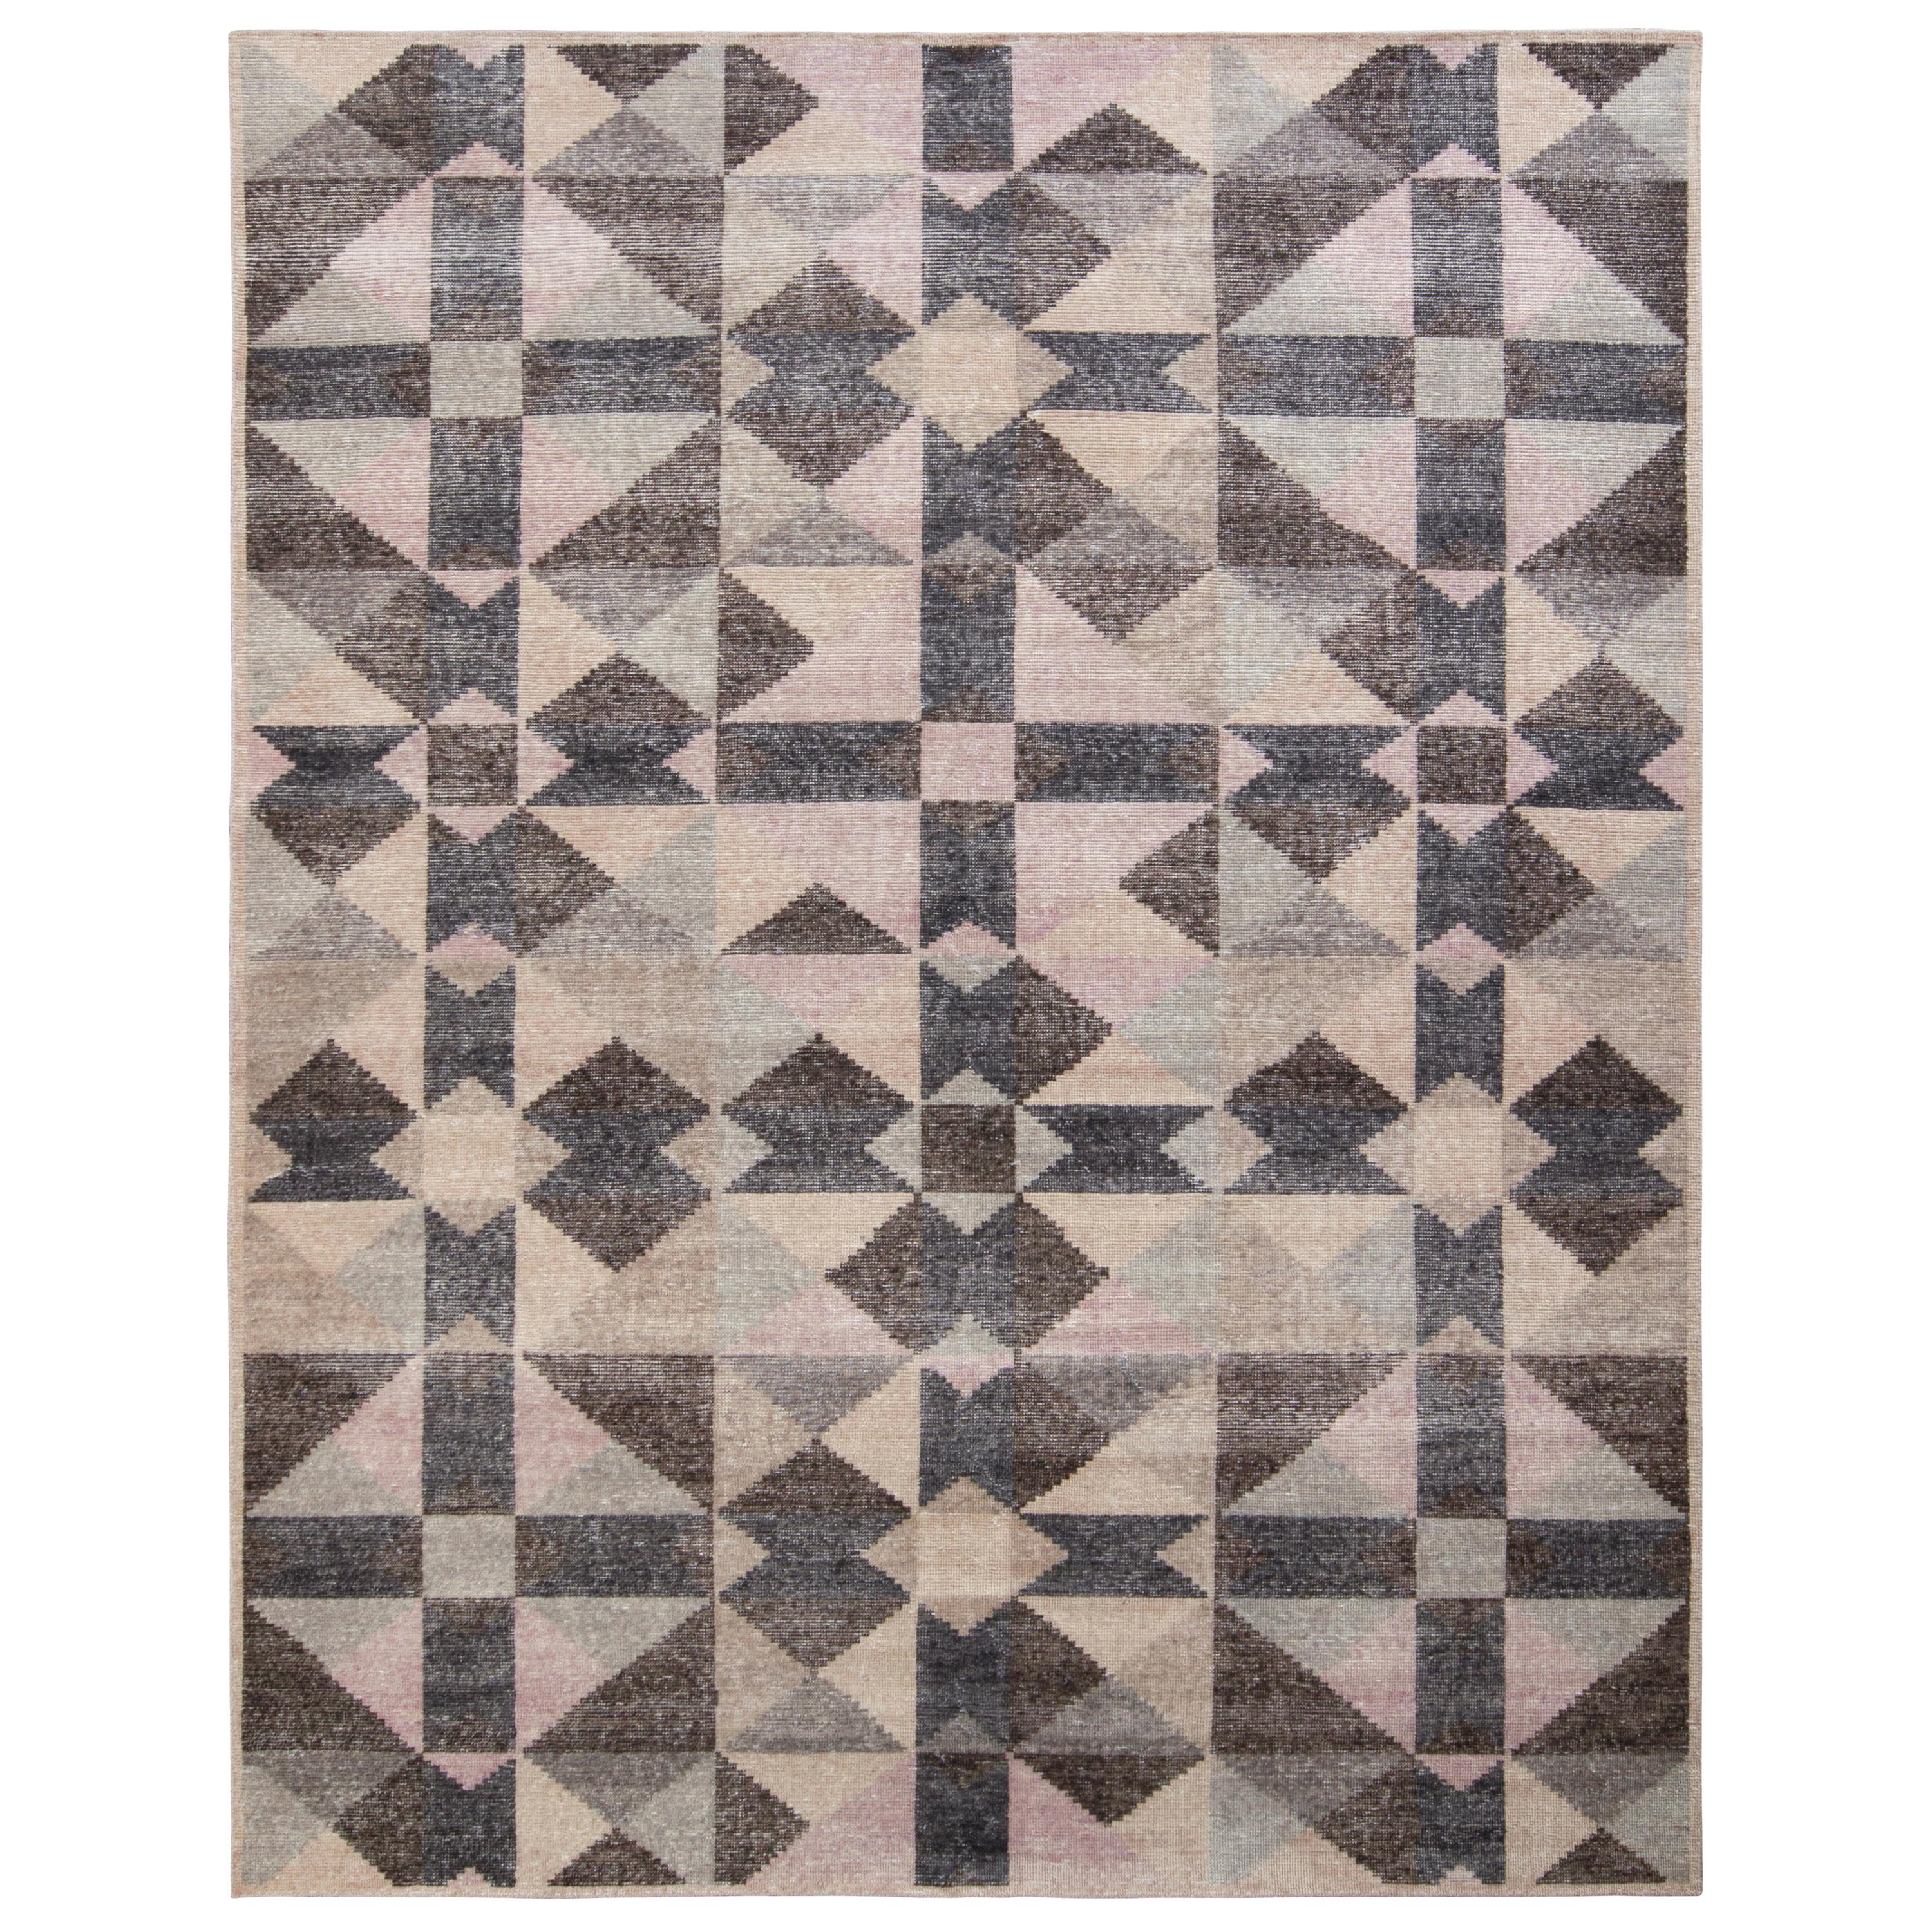 Rug & Kilim’s Distressed Style Modern Rug in Beige Brown Geometric Pattern